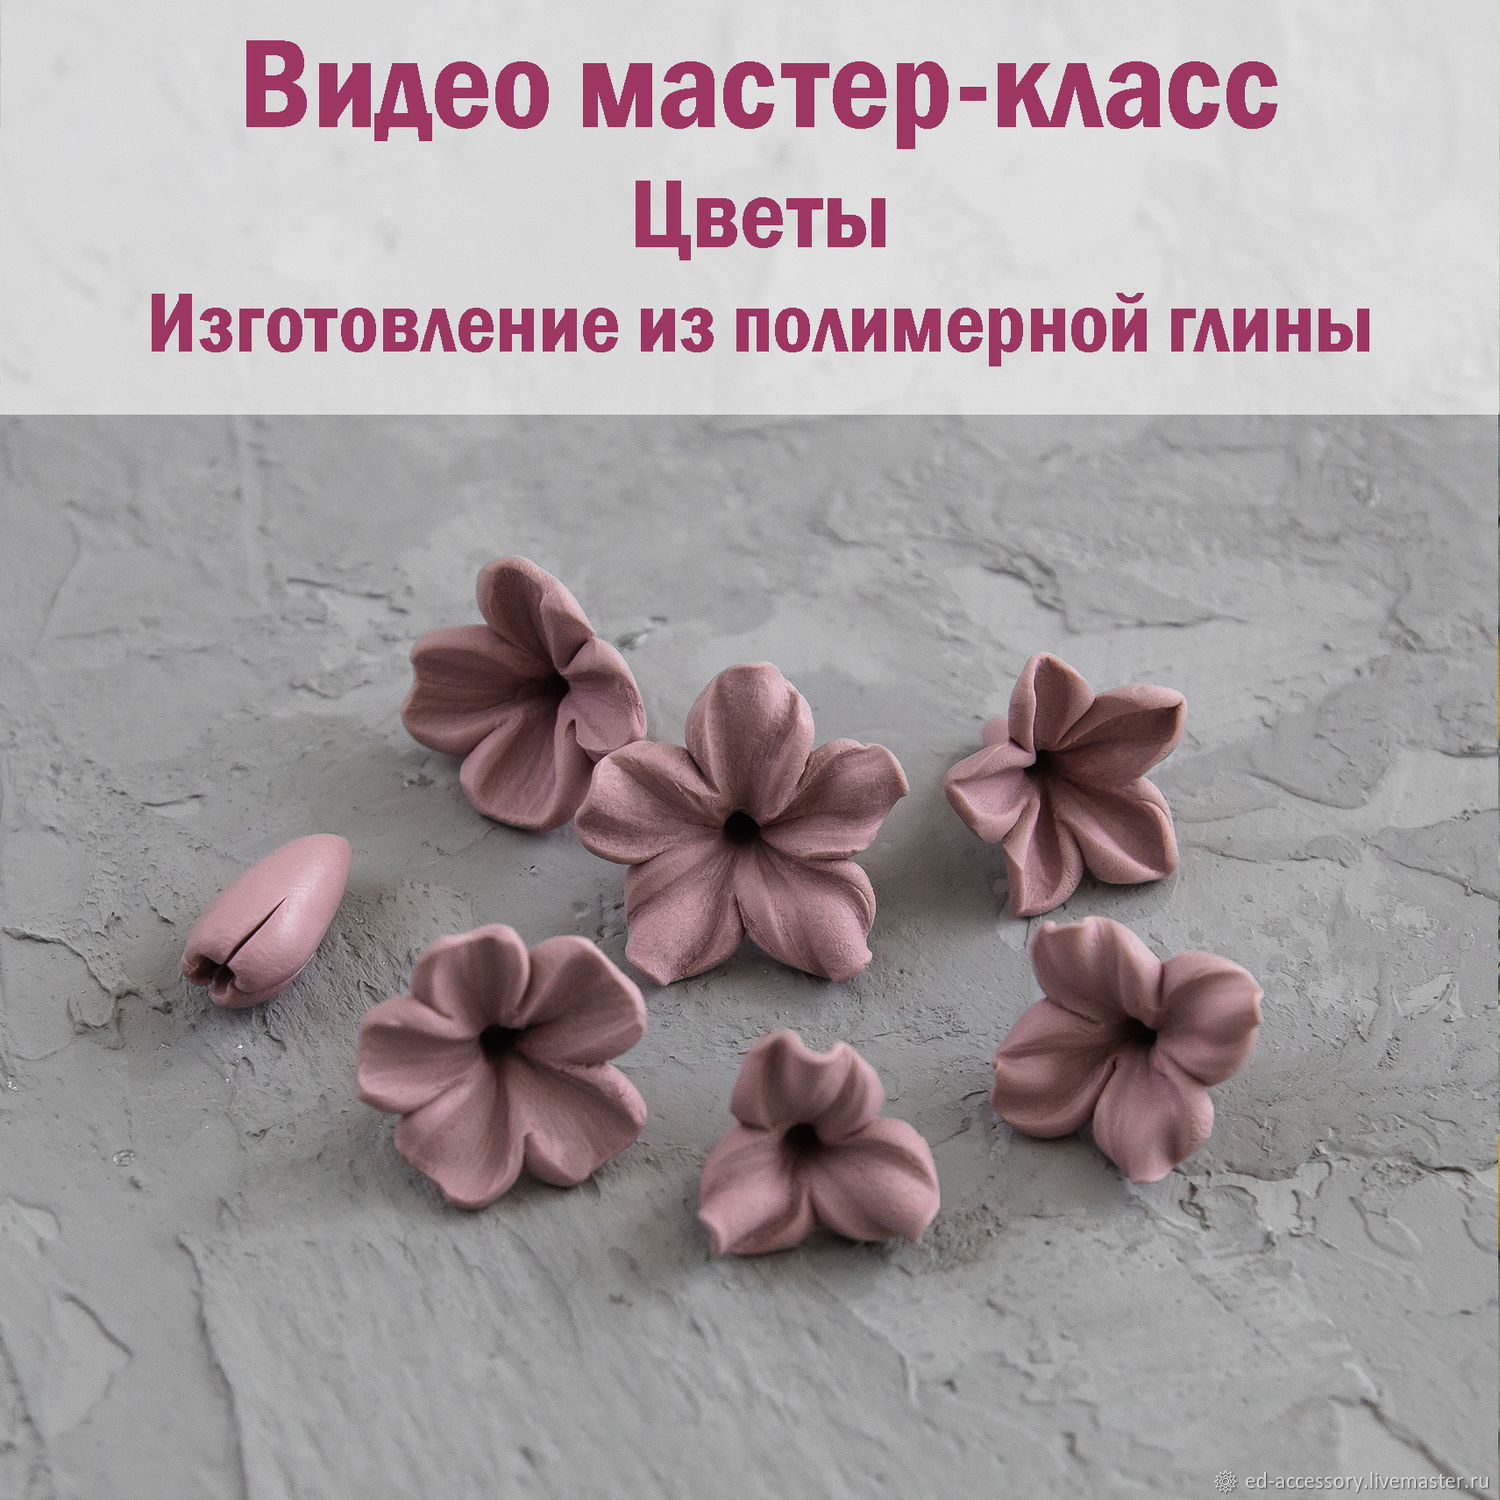 Видео мастер-класс: Изготовление цветов из полимерной глины винтернет-магазине Ярмарка Мастеров по цене 300 ₽ – LP80MRU